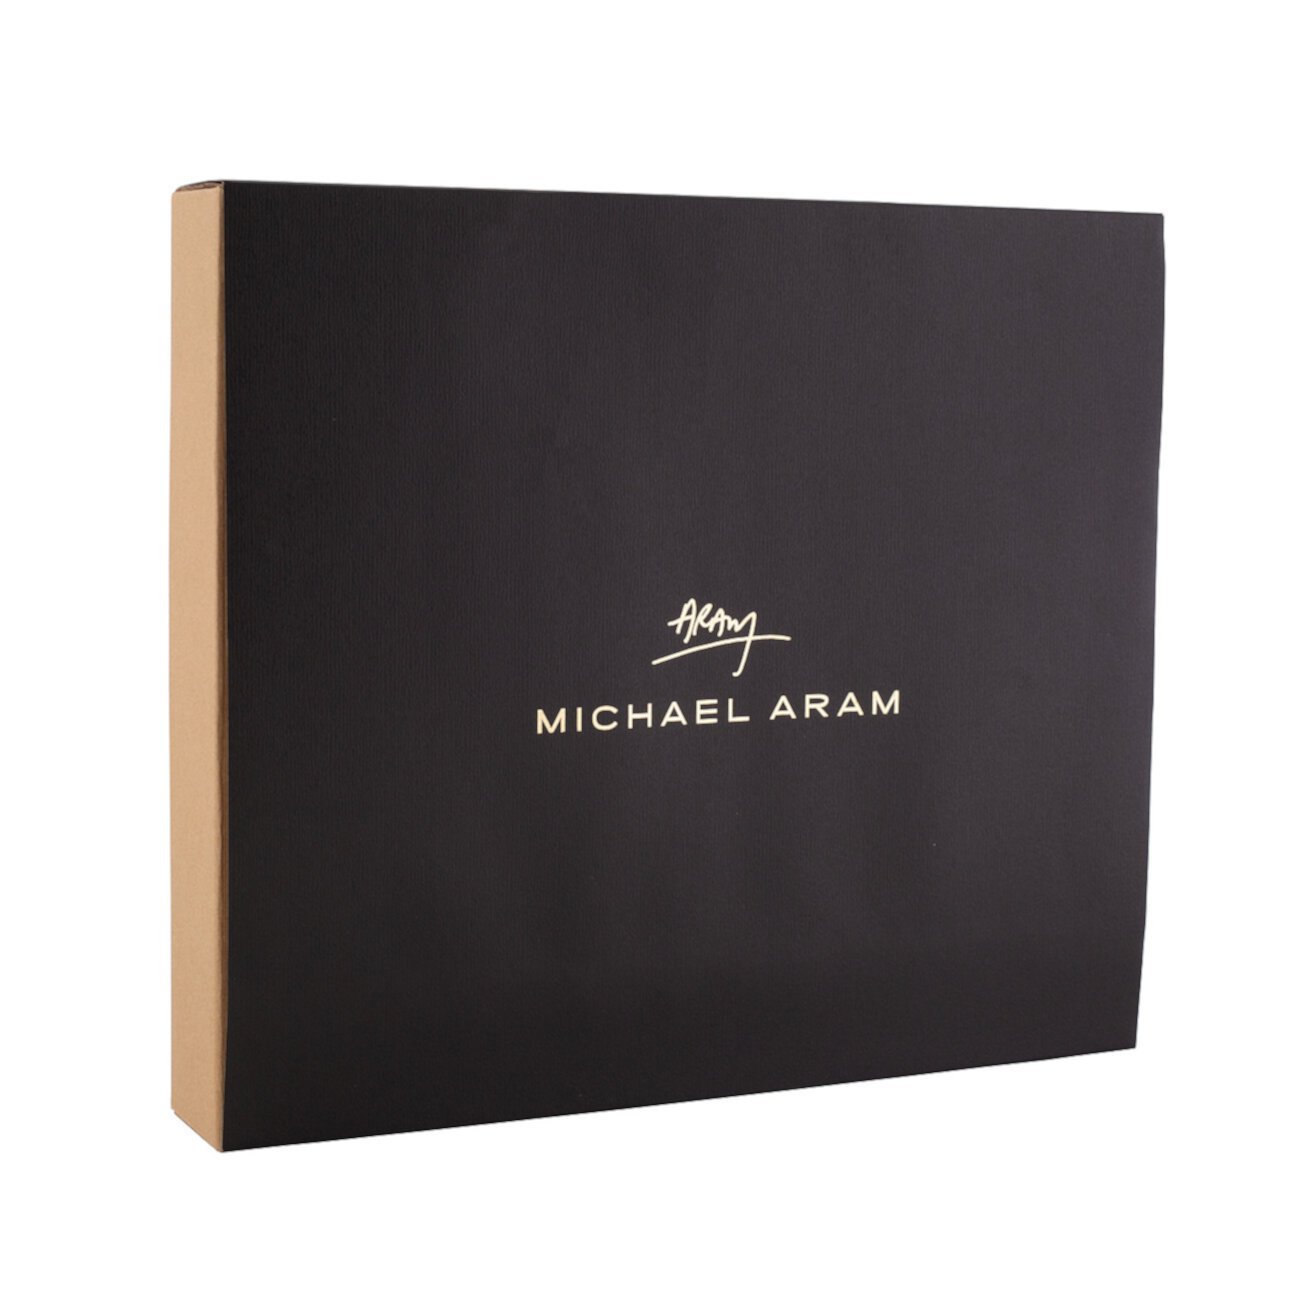 Светоотражающая рамка для фотографий 8 дюймов x 10 дюймов MICHAEL ARAM